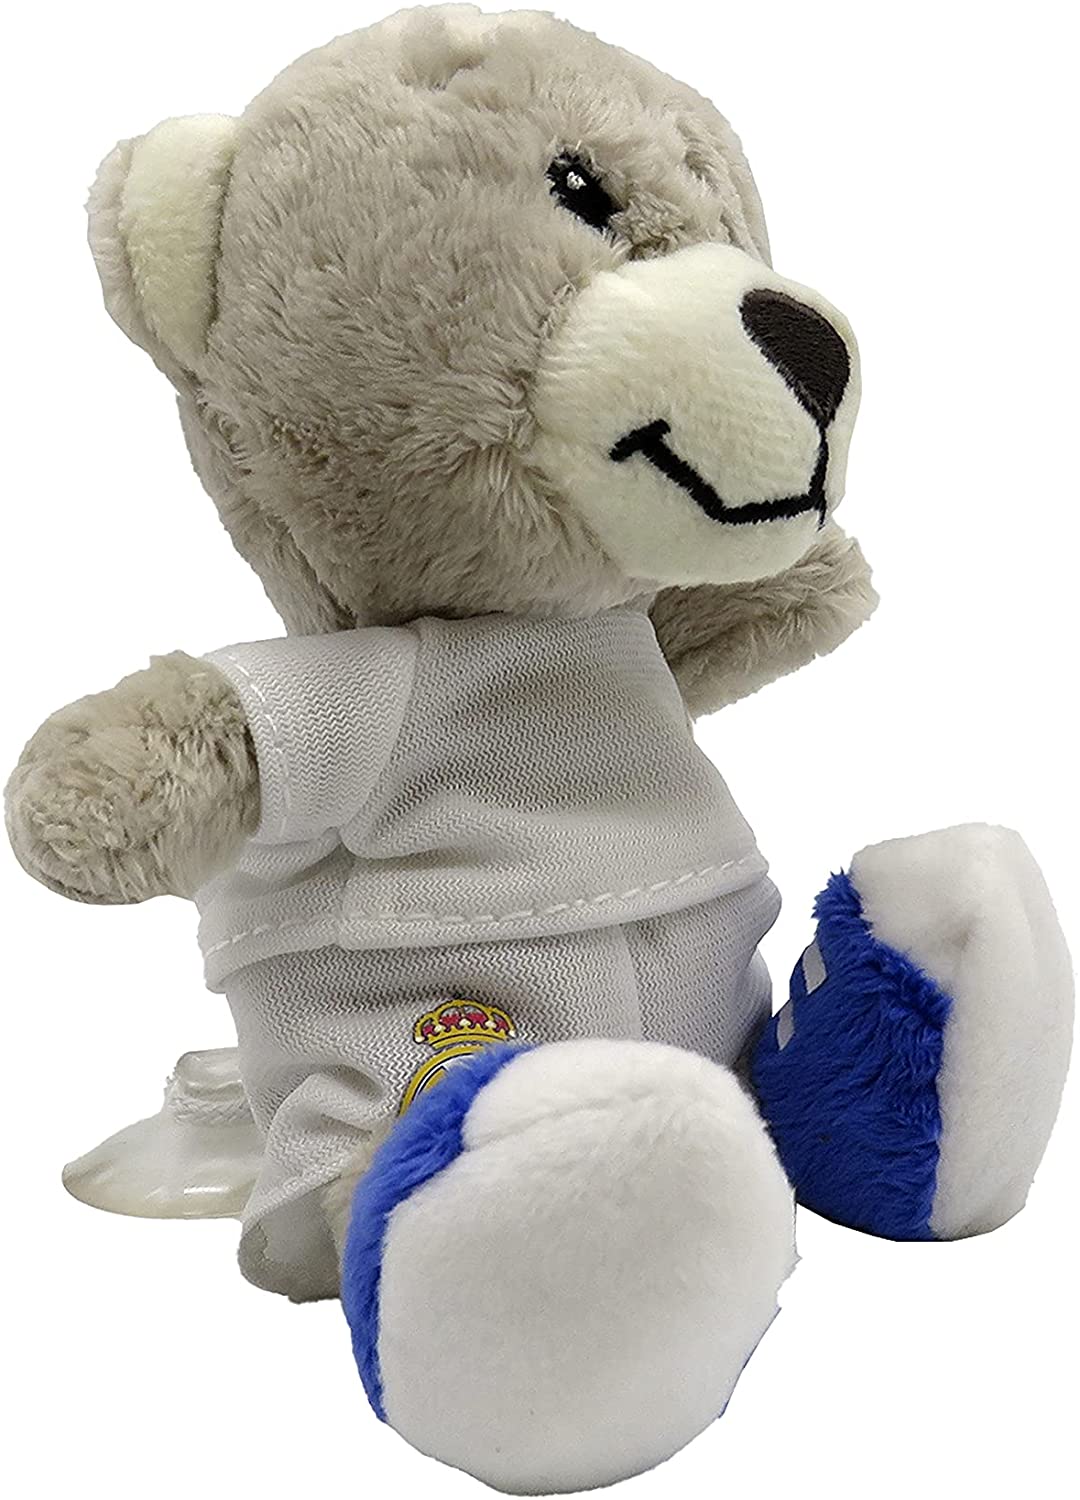 Real Madrid Teddybär mit Saugnapf 17 cm, Weiß CYP M-02-RM